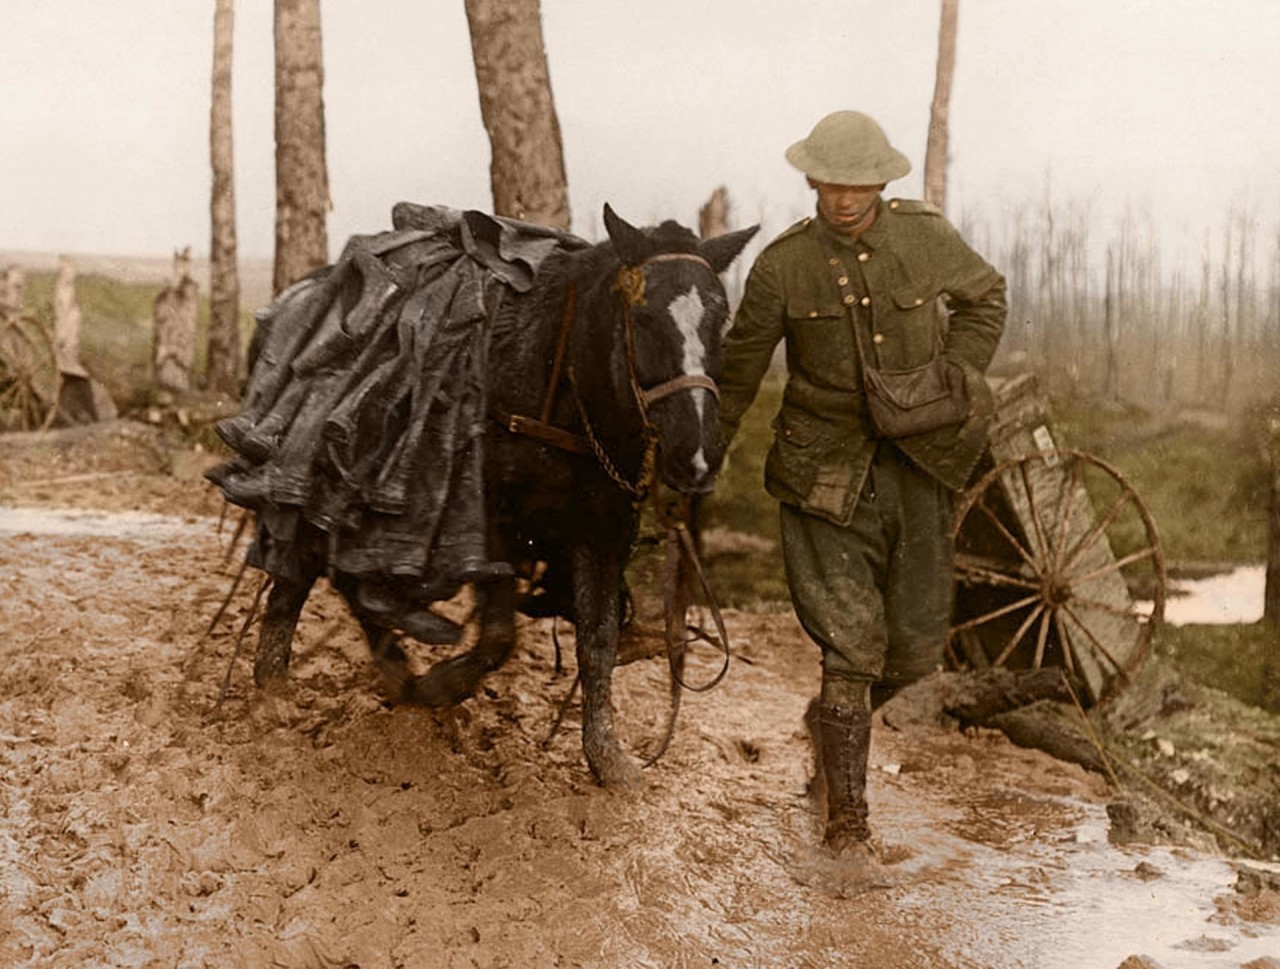 Транспортировка солдатских сапог на лошади архивное фото, колоризация, колоризация фотографий, колоризированные снимки, первая мировая, первая мировая война, фото войны